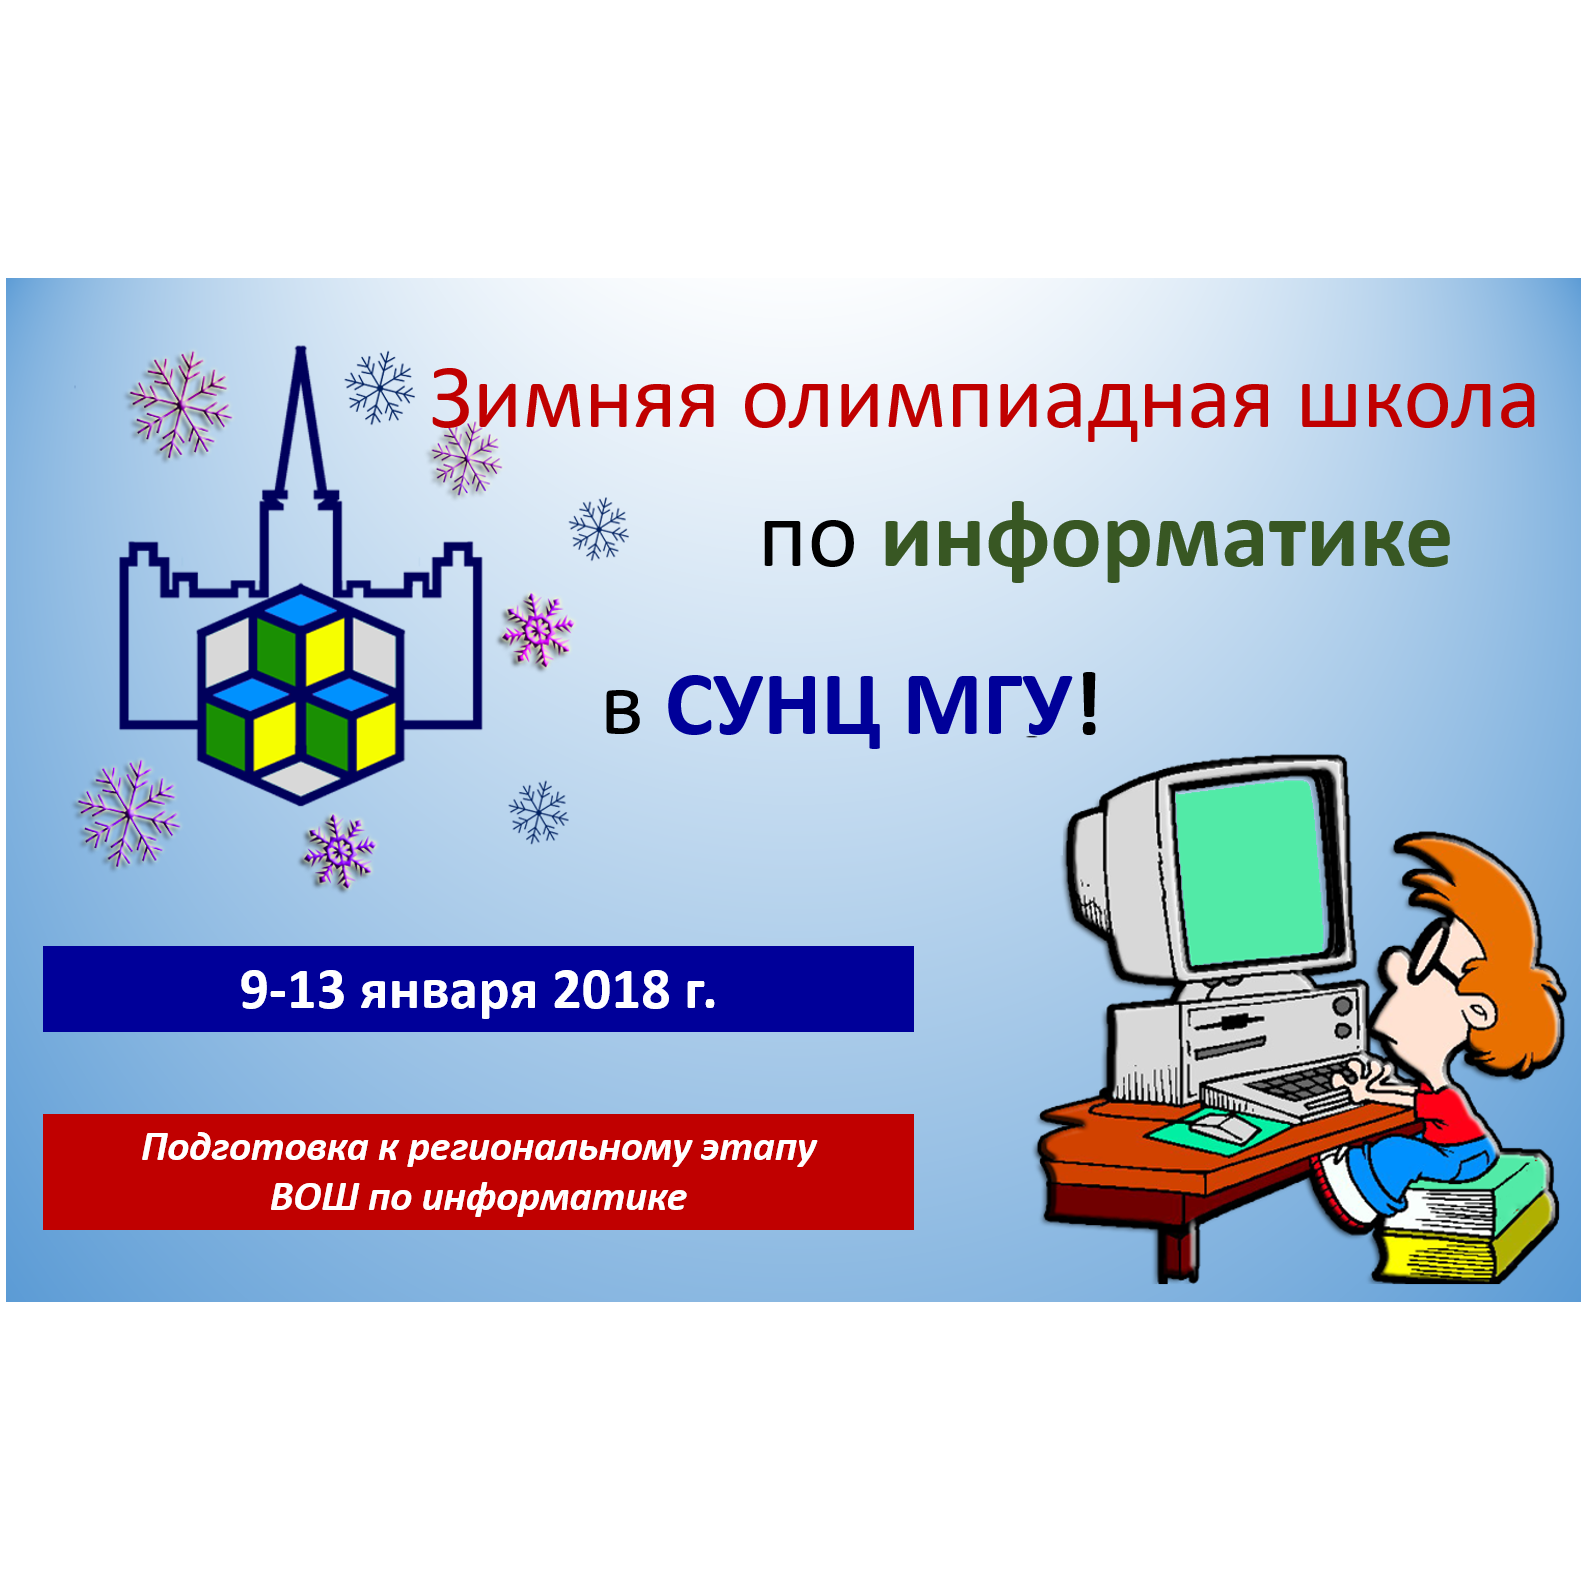 Зимняя олимпиадная школа по информатике в СУНЦ МГУ!